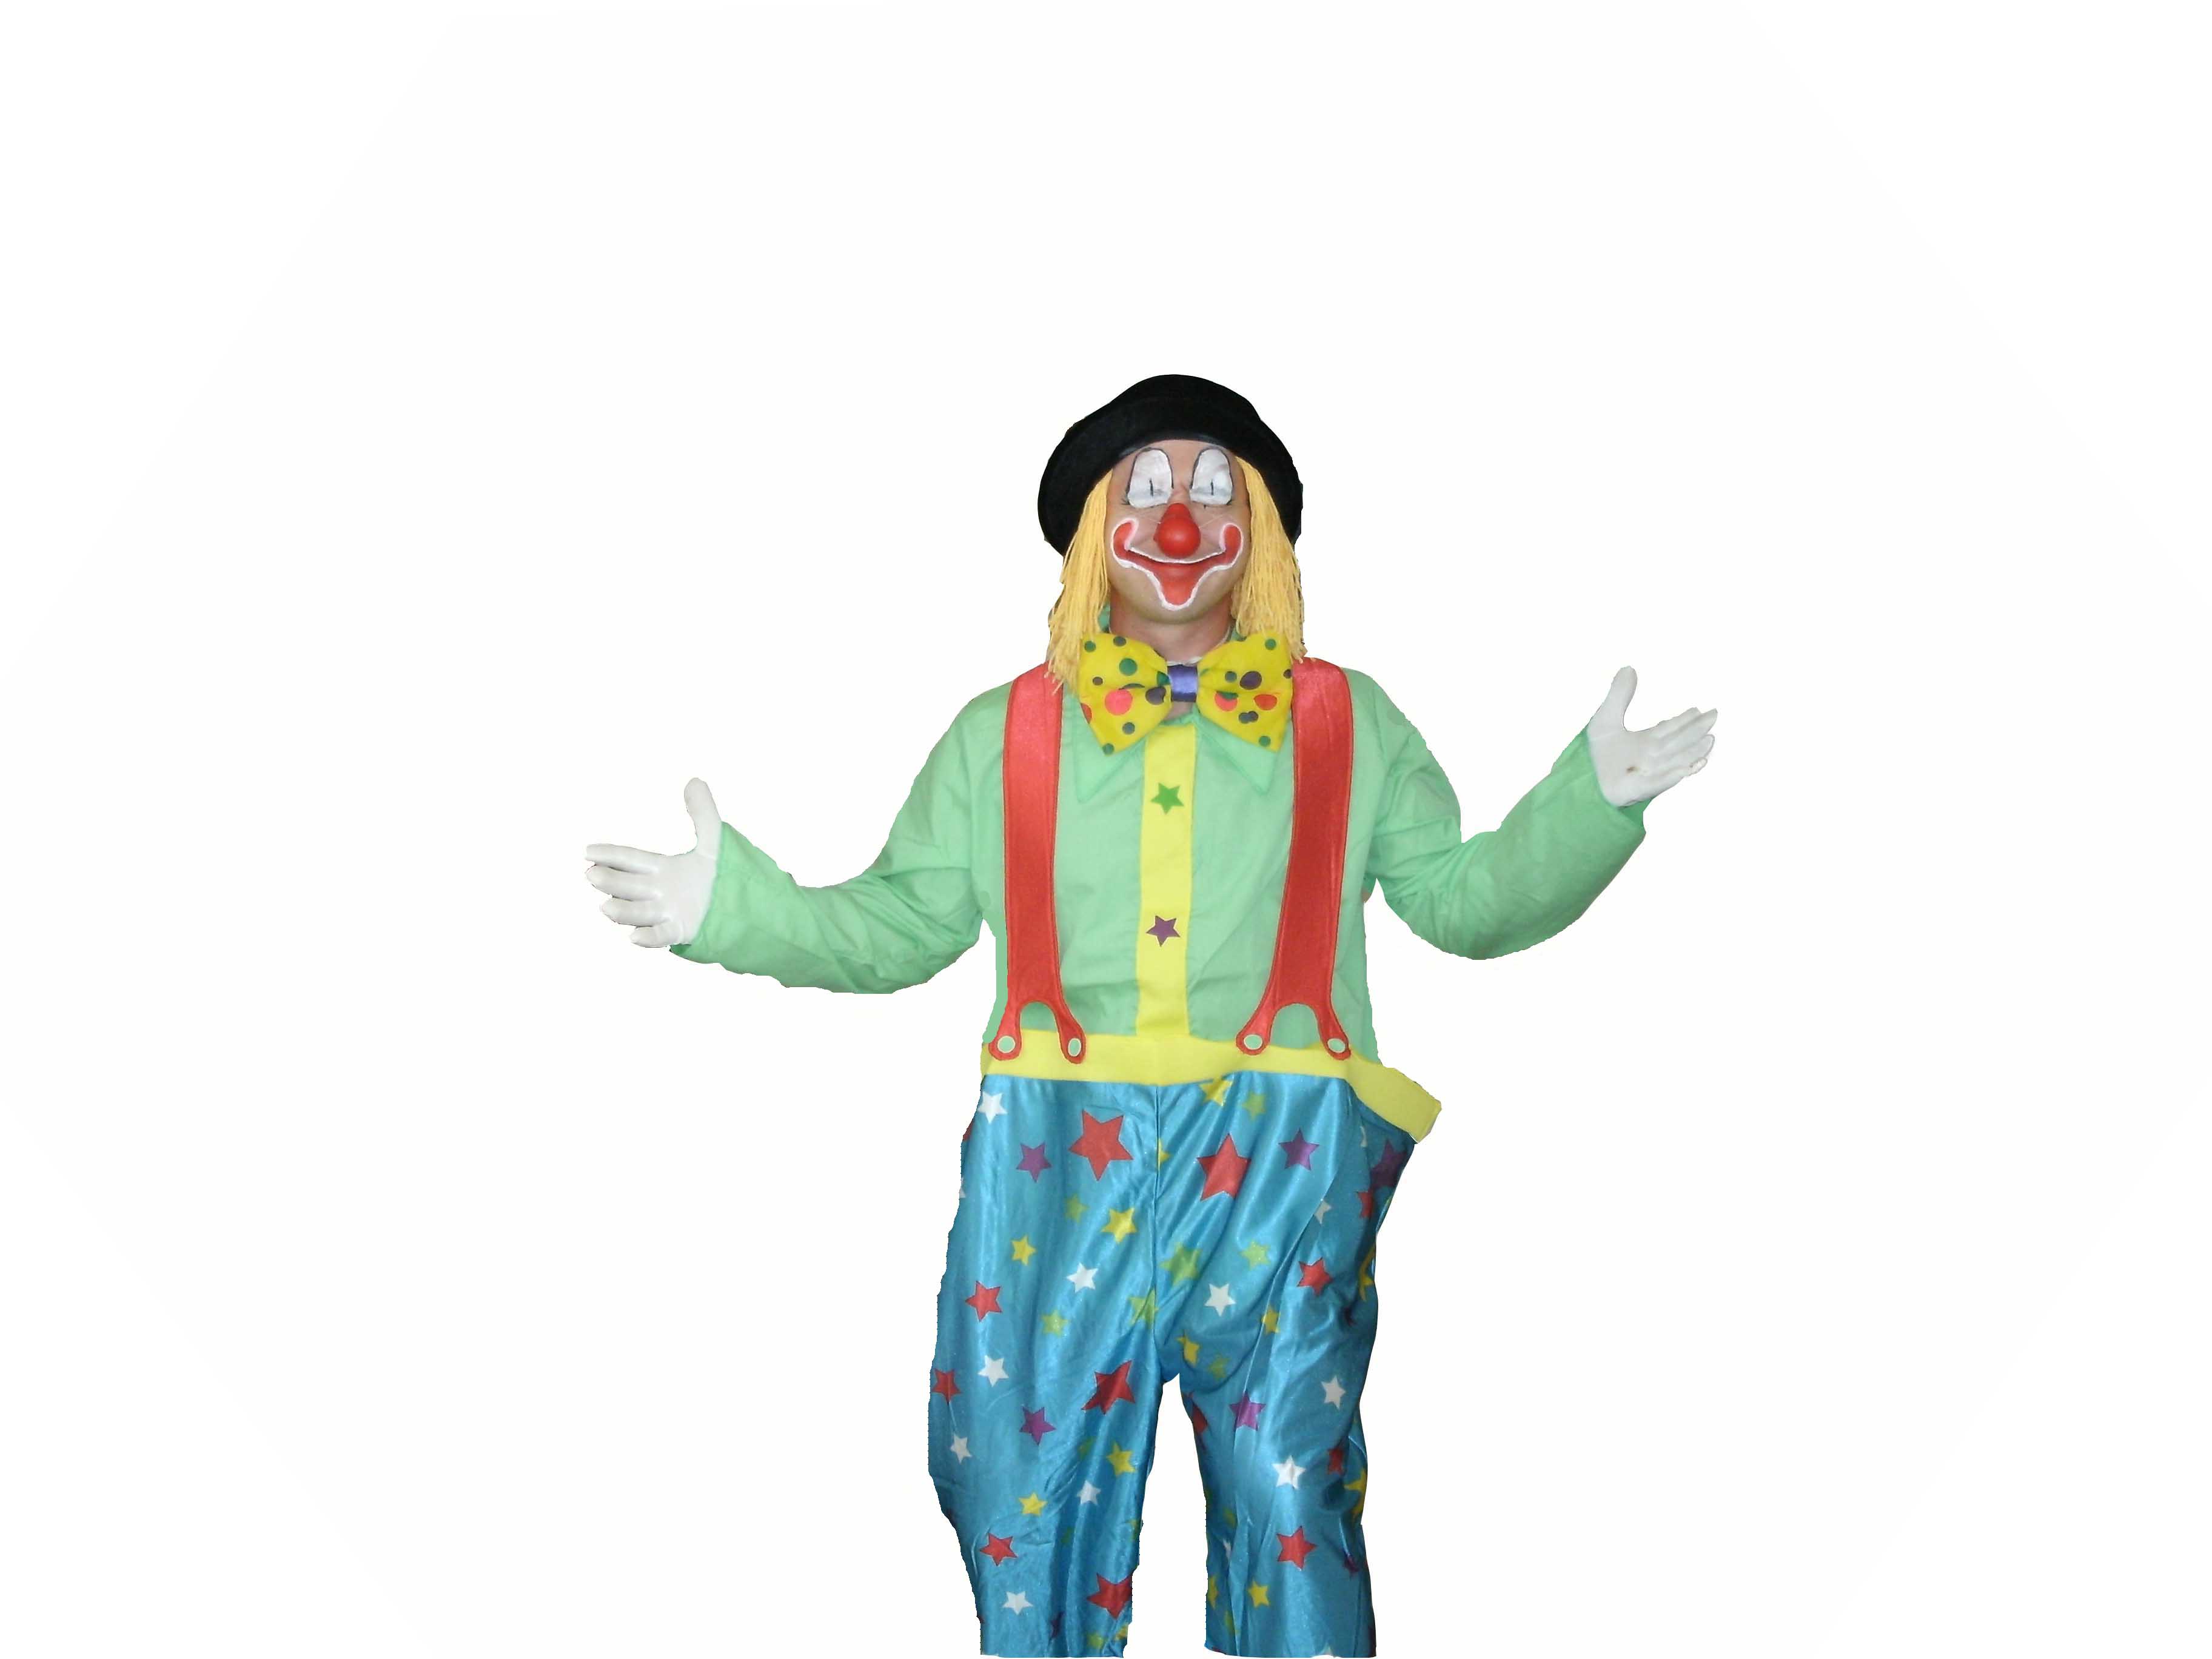 Clown Shows